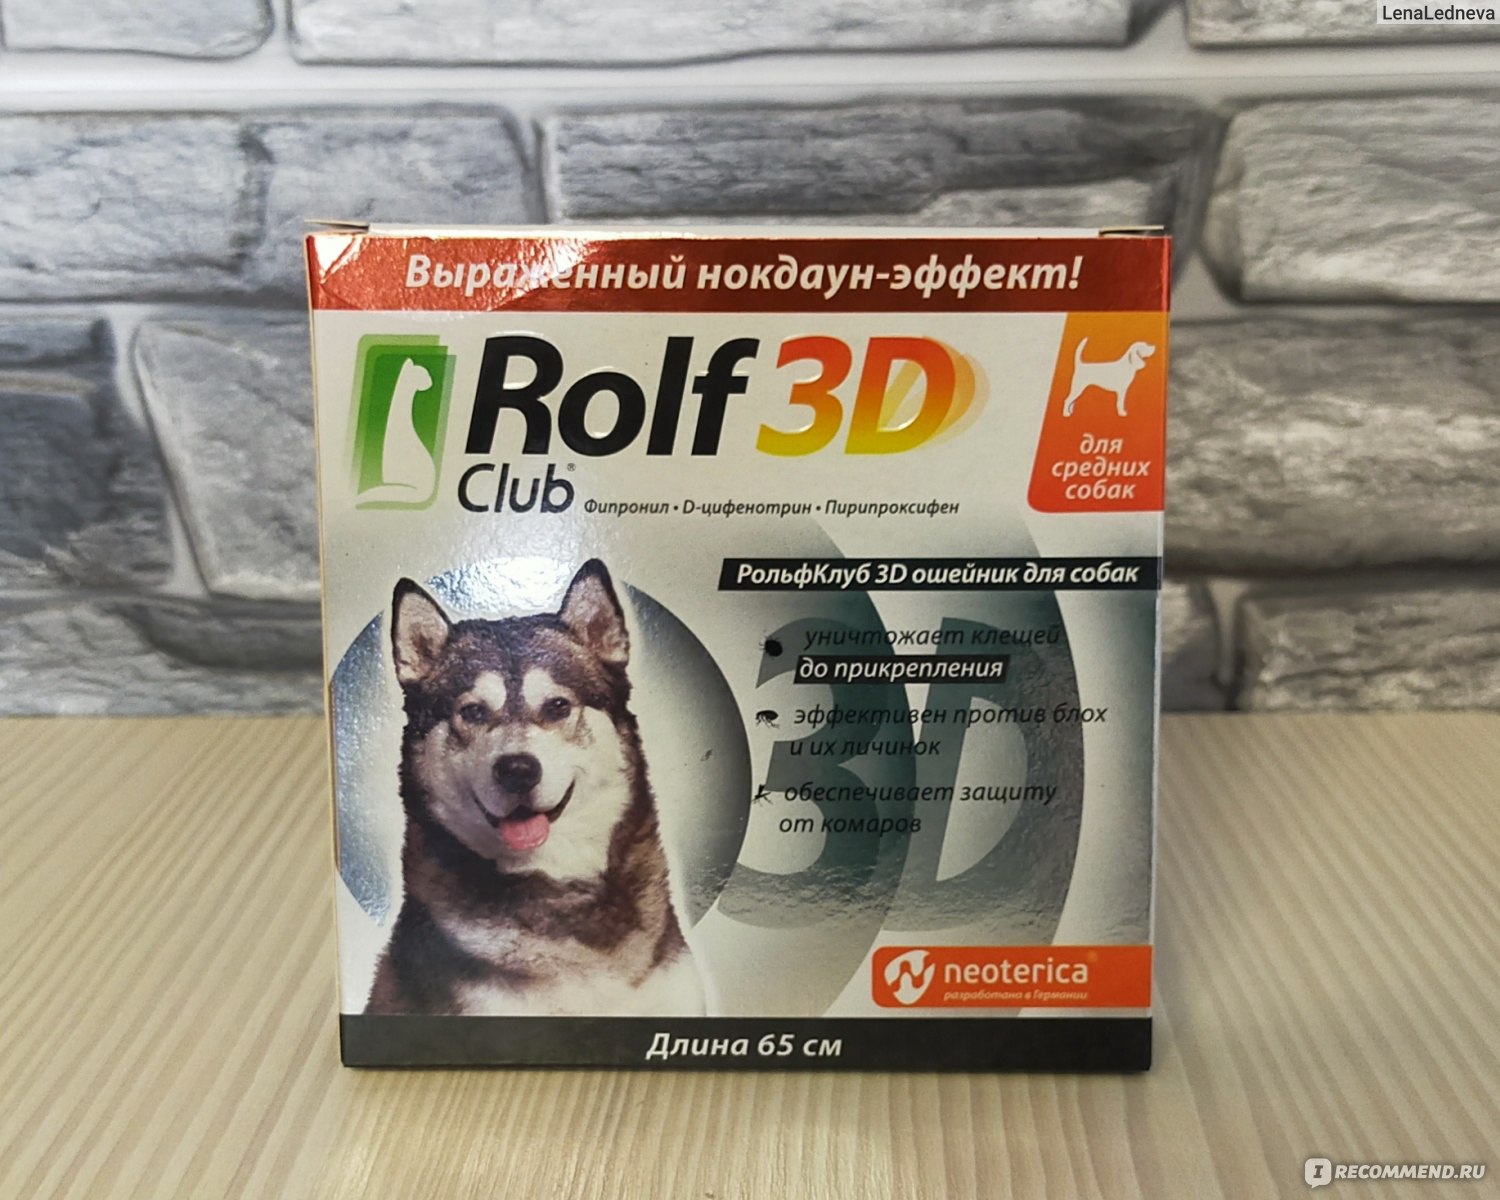 Недоуздок Halti OptiFit - Dog Decor - интернет-магазин зоотоваров для собак 🐶